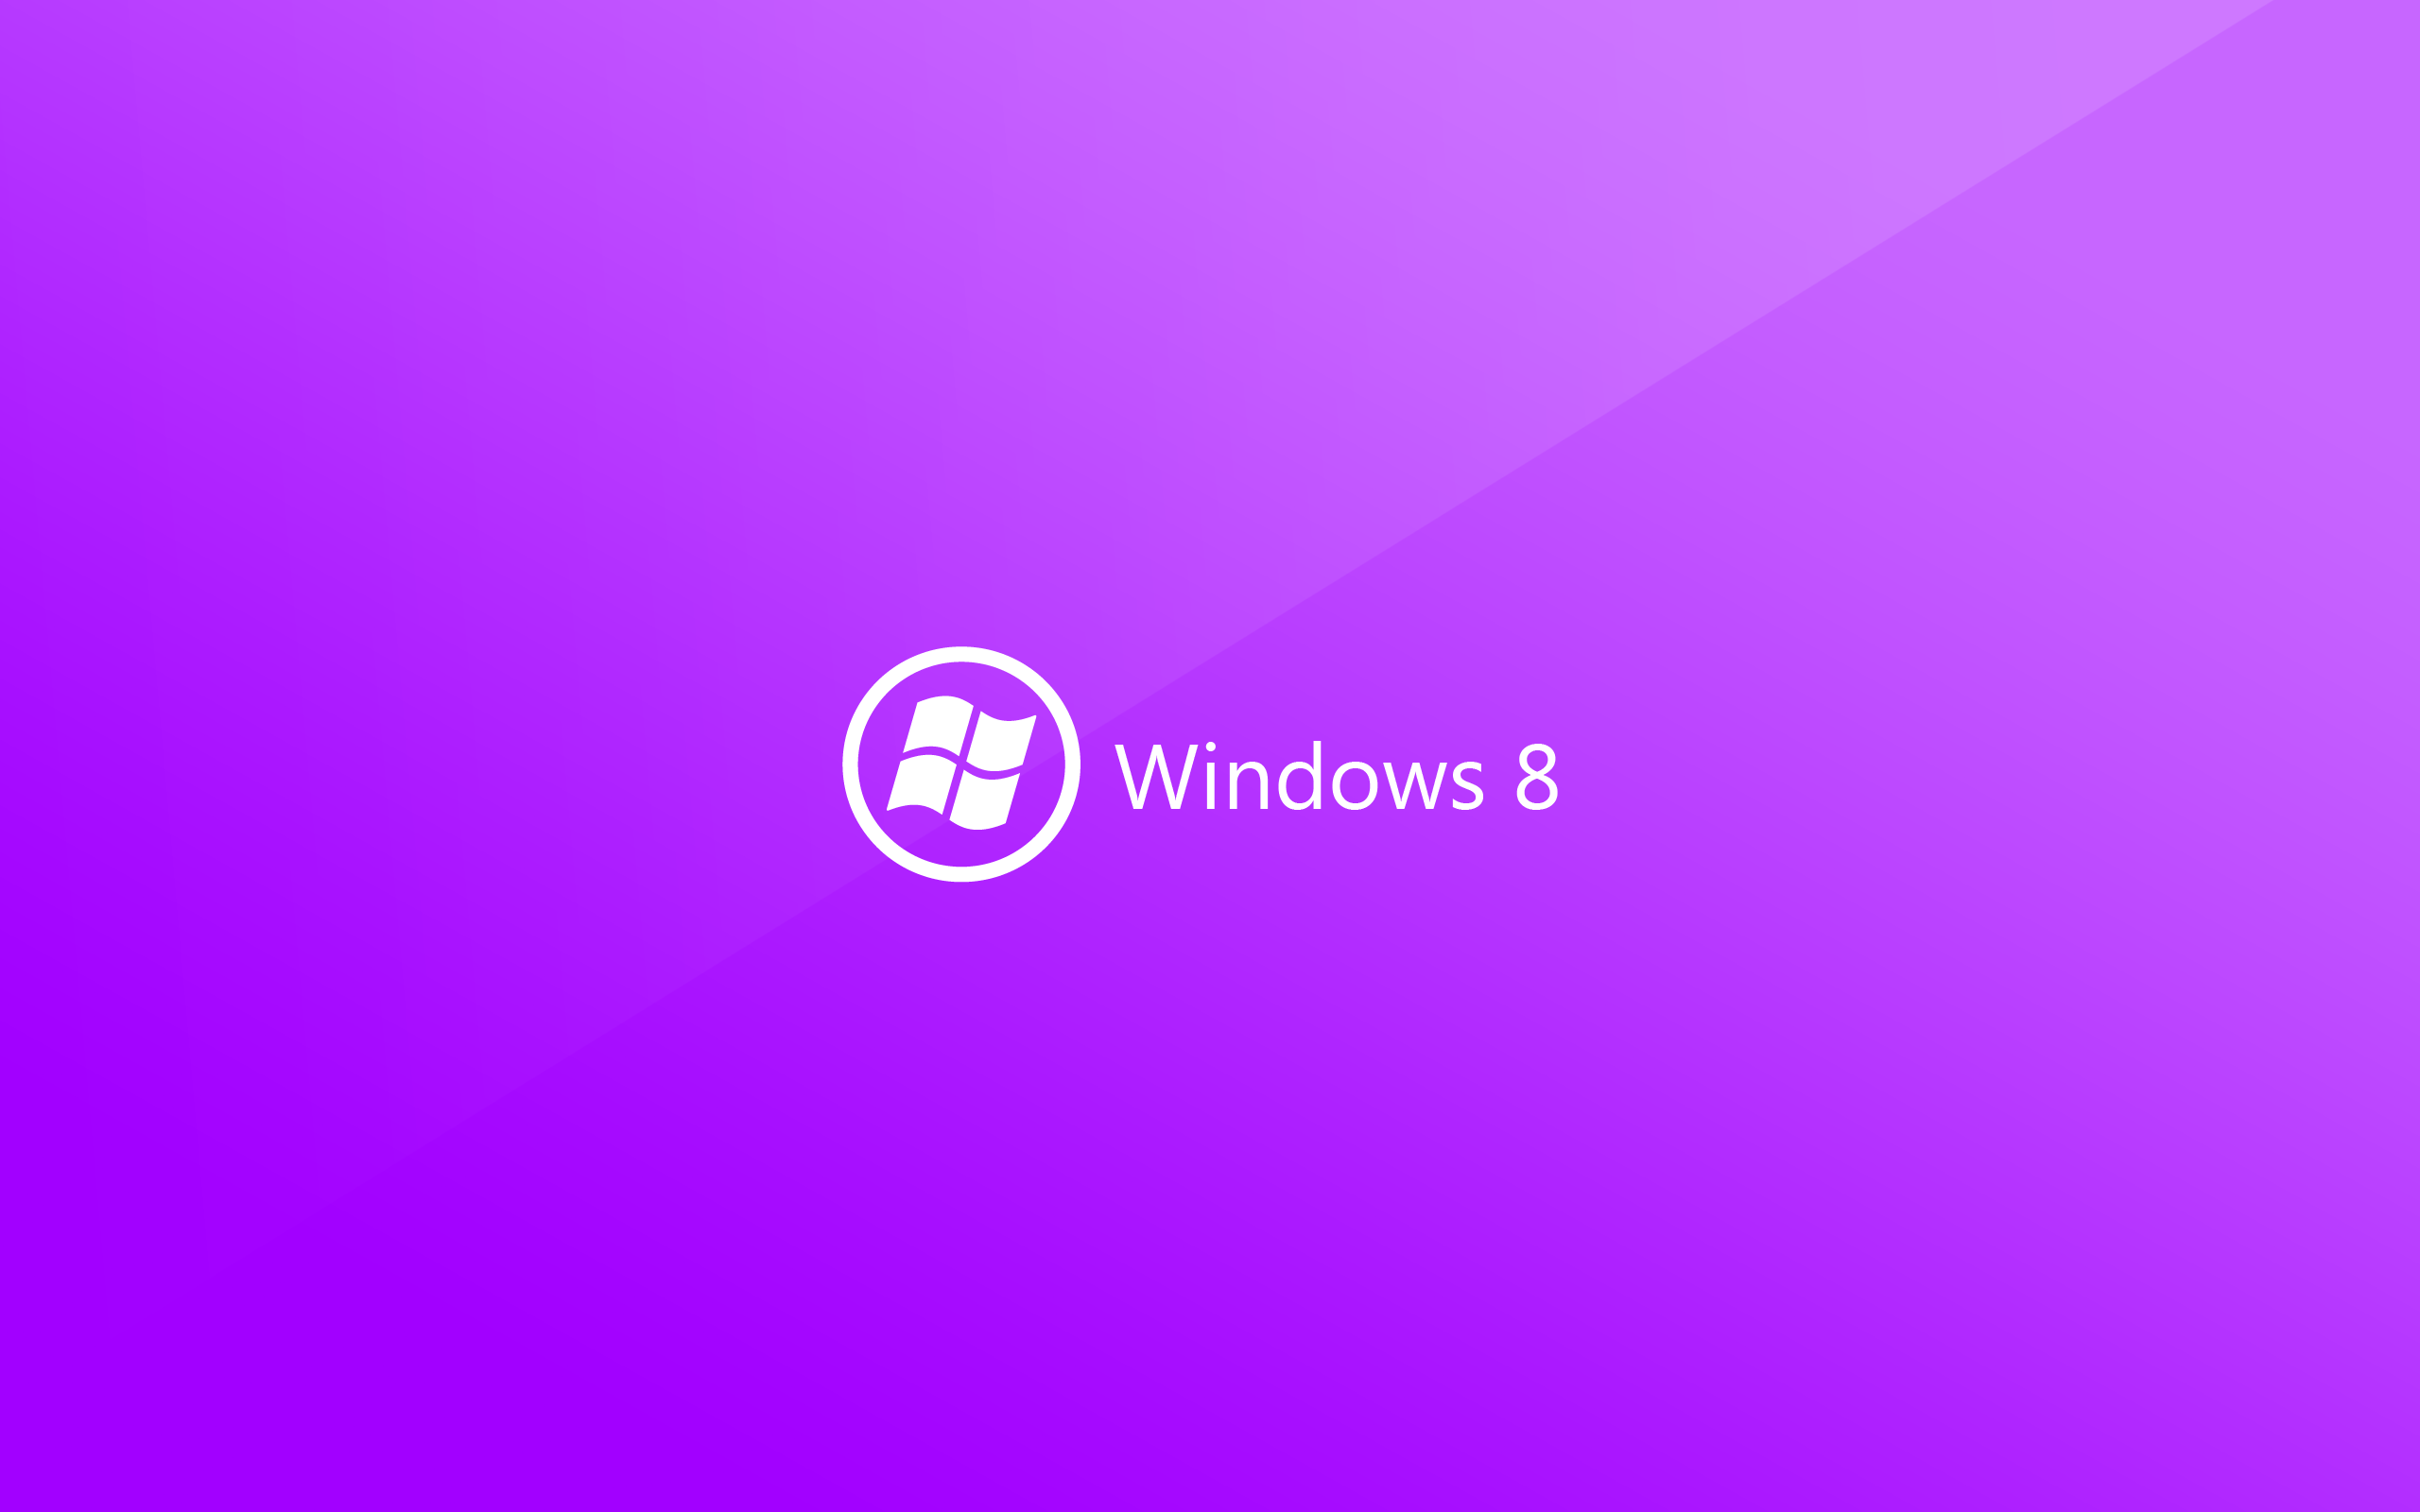 ダウンロード画像 Windows8 4k 創造 材料設計 紫色の背景 ロゴ Windows8のロゴ Microsoft 画面の解像度 2560x1600 壁紙デスクトップ上